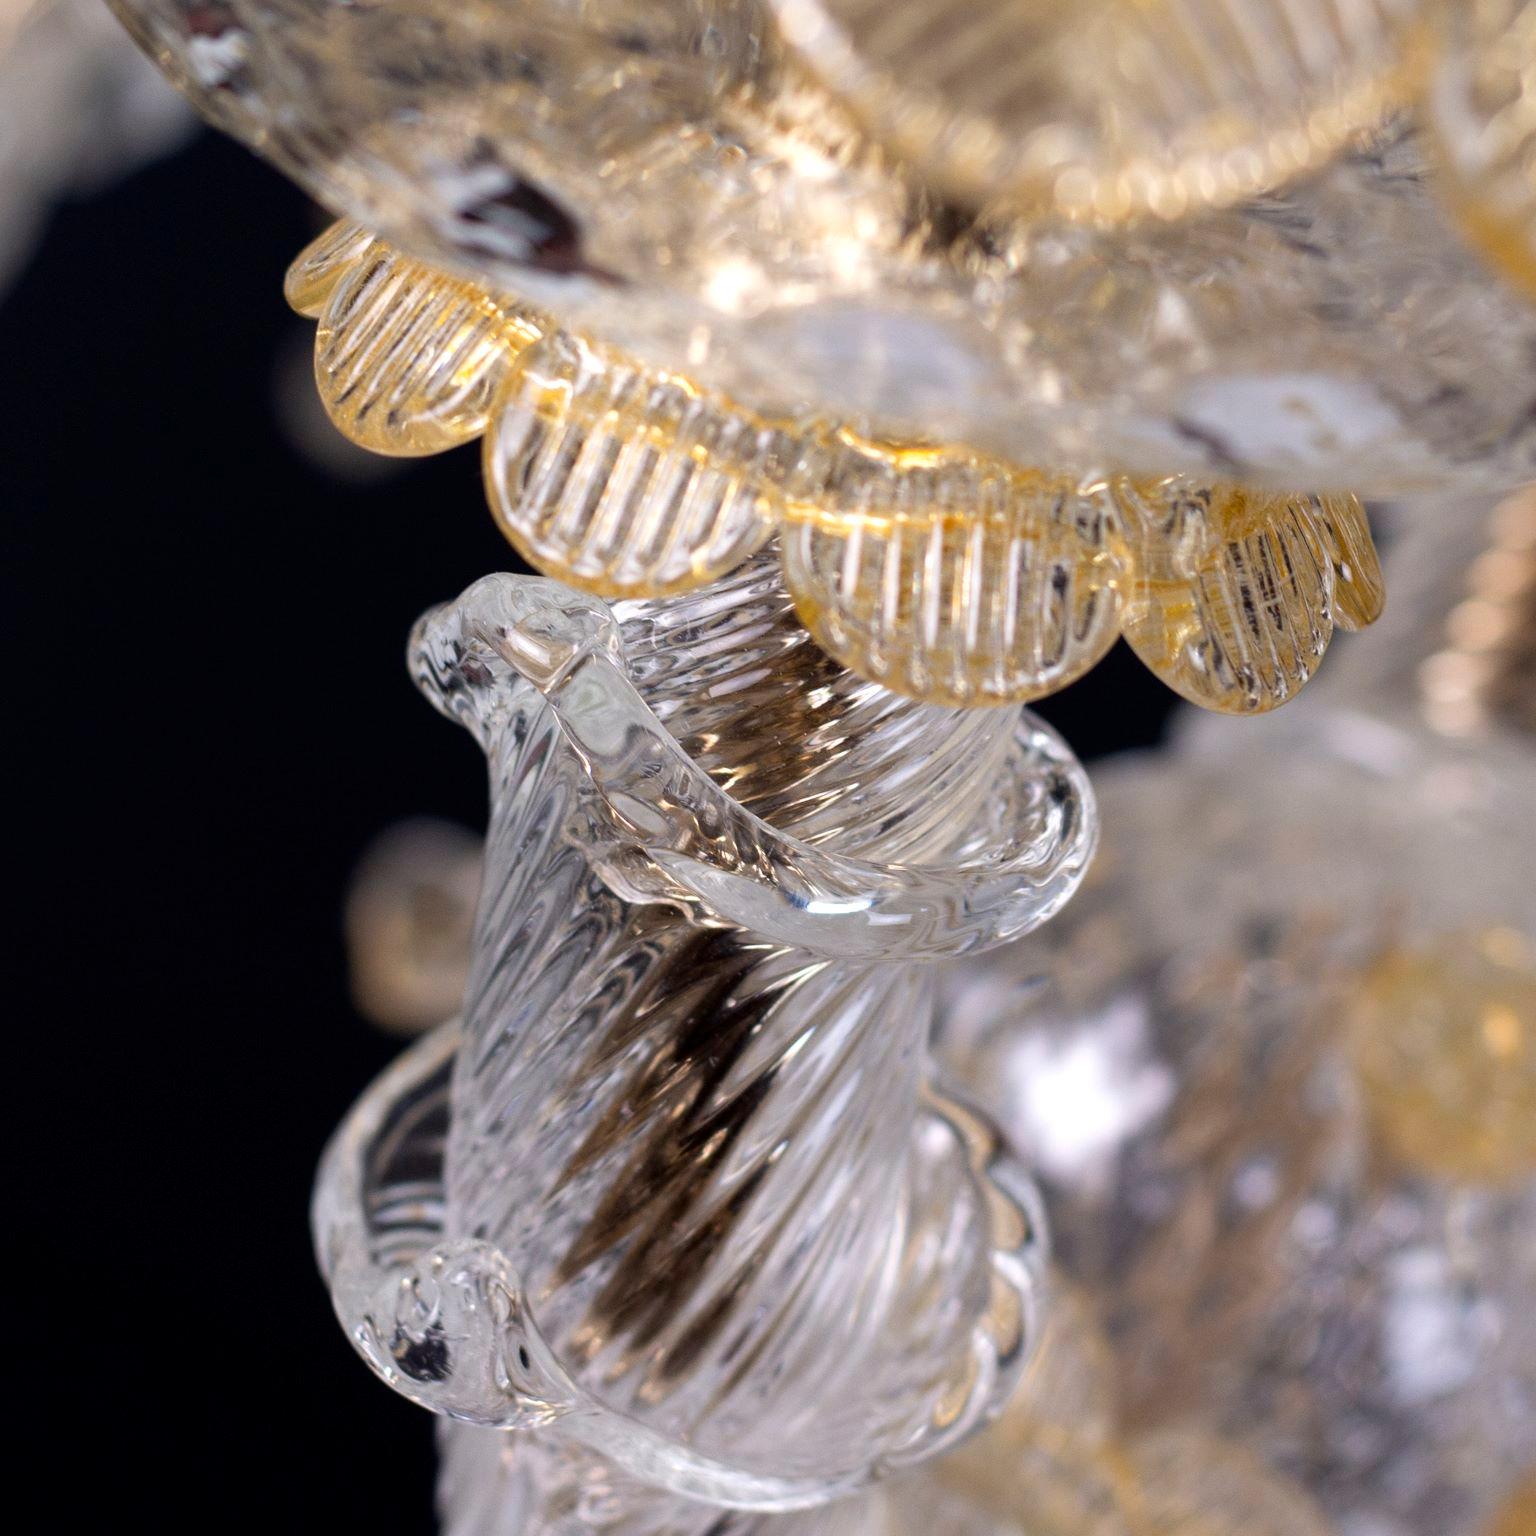 Cäsar Kronleuchter 6 Arme, Kristall und Bernstein, Murano Glas, oberer Teil mit Blättern und Blumen von Multiforme
Sowohl der Name als auch das Bauwerk erinnern an die Pracht vergangener Jahrhunderte. Es handelt sich um ein immergrünes Modell, ein